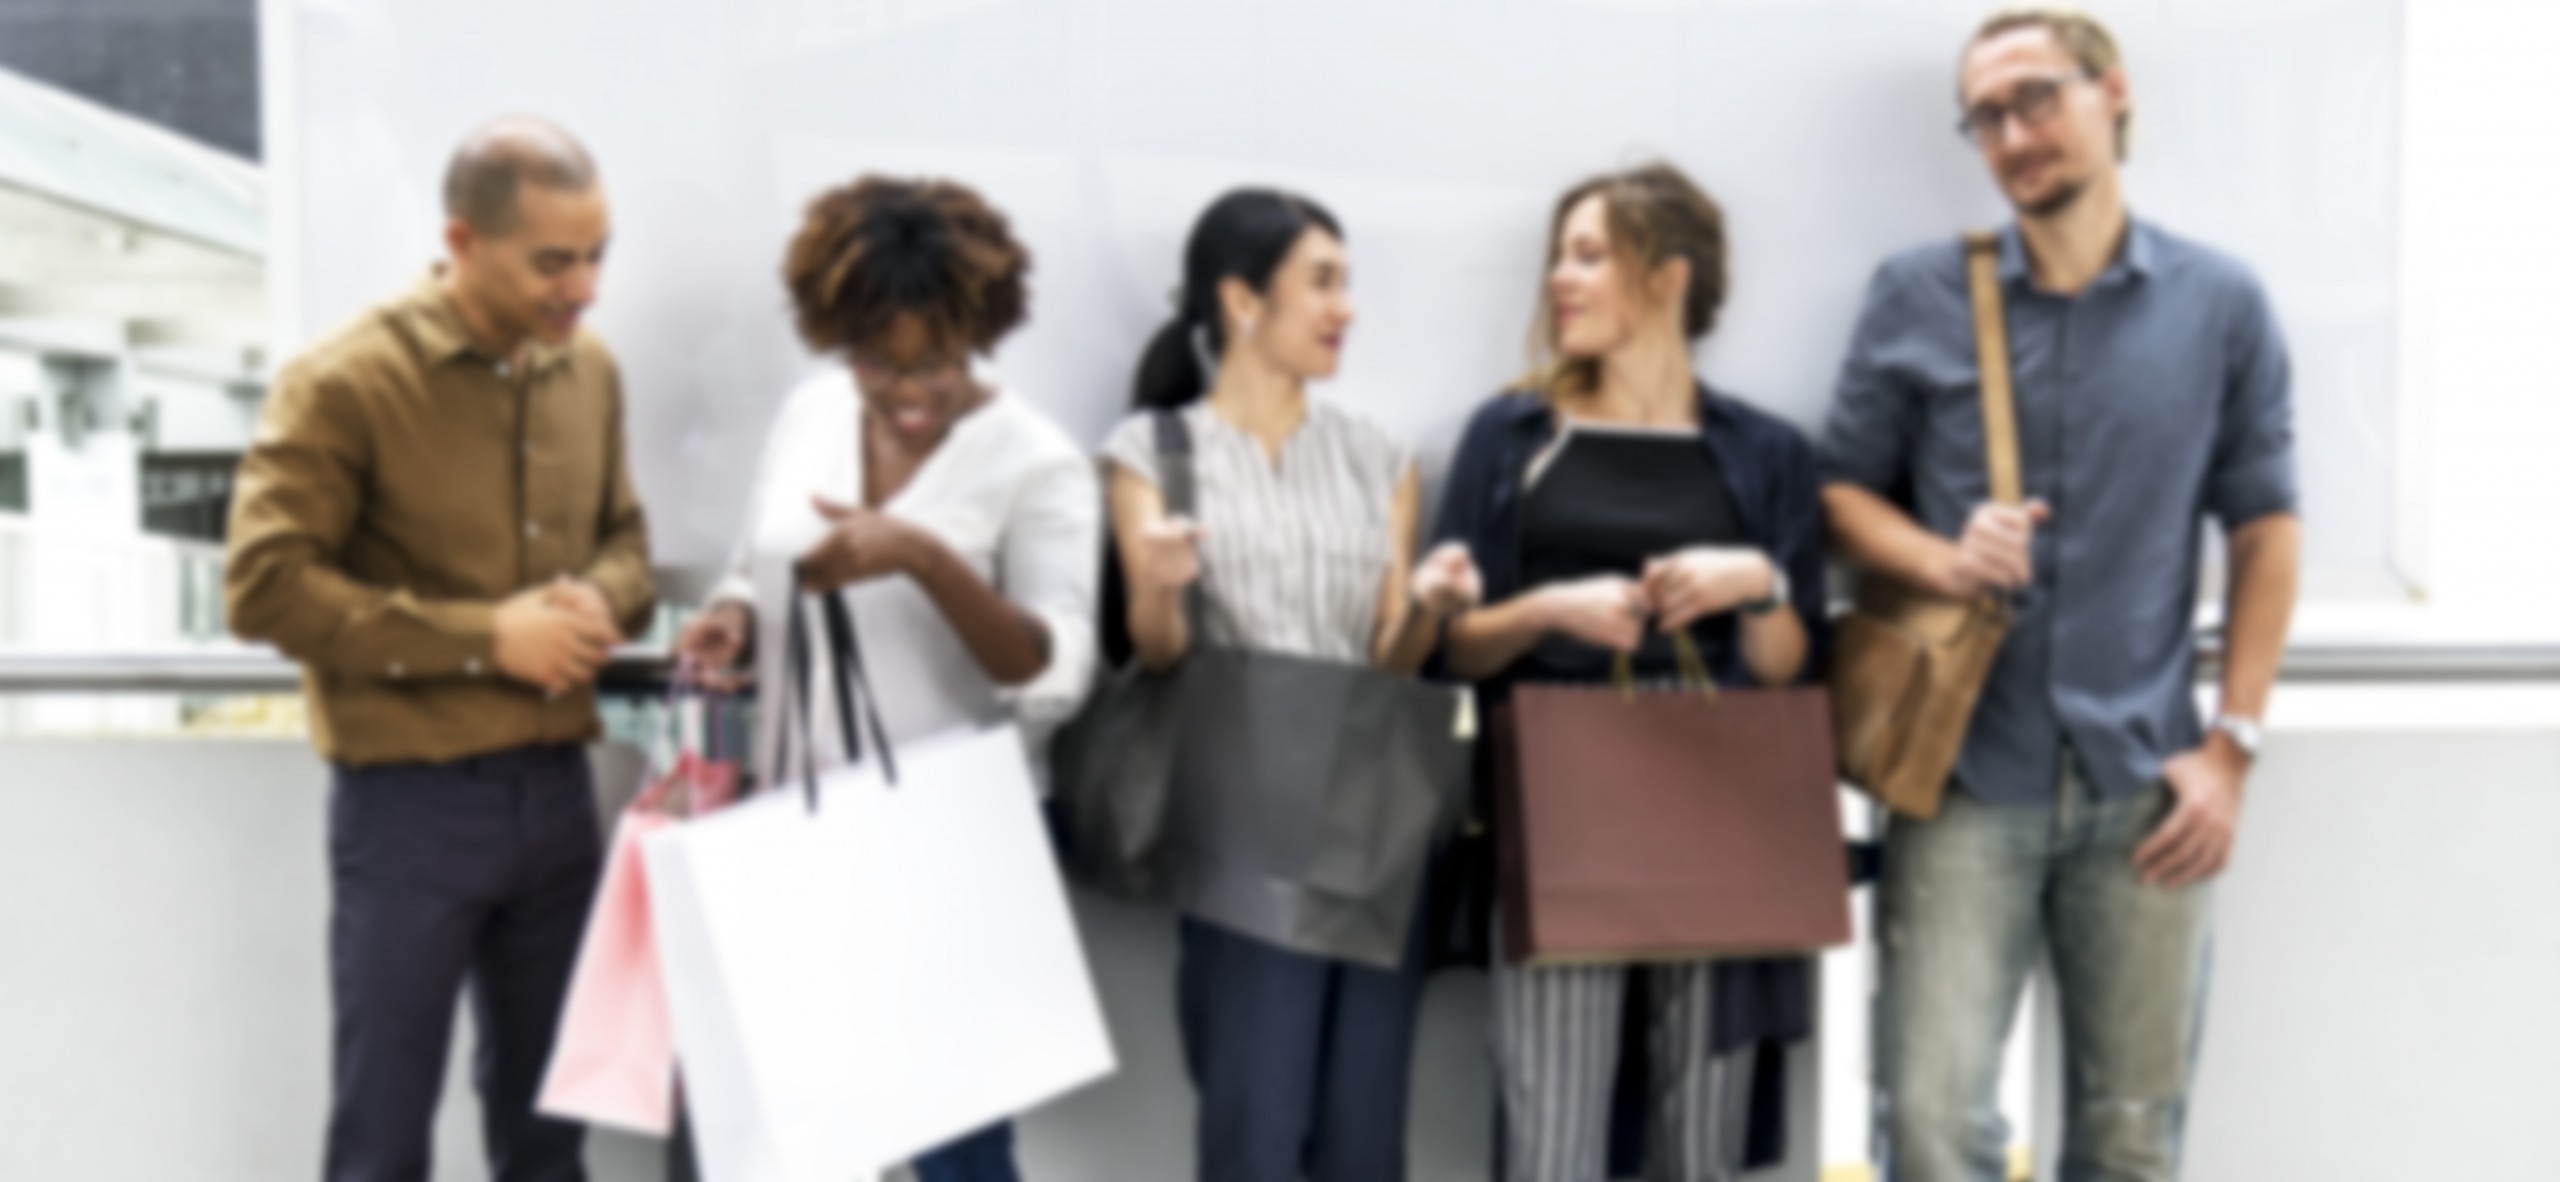 CW Diversidad e Inclusion en Retail